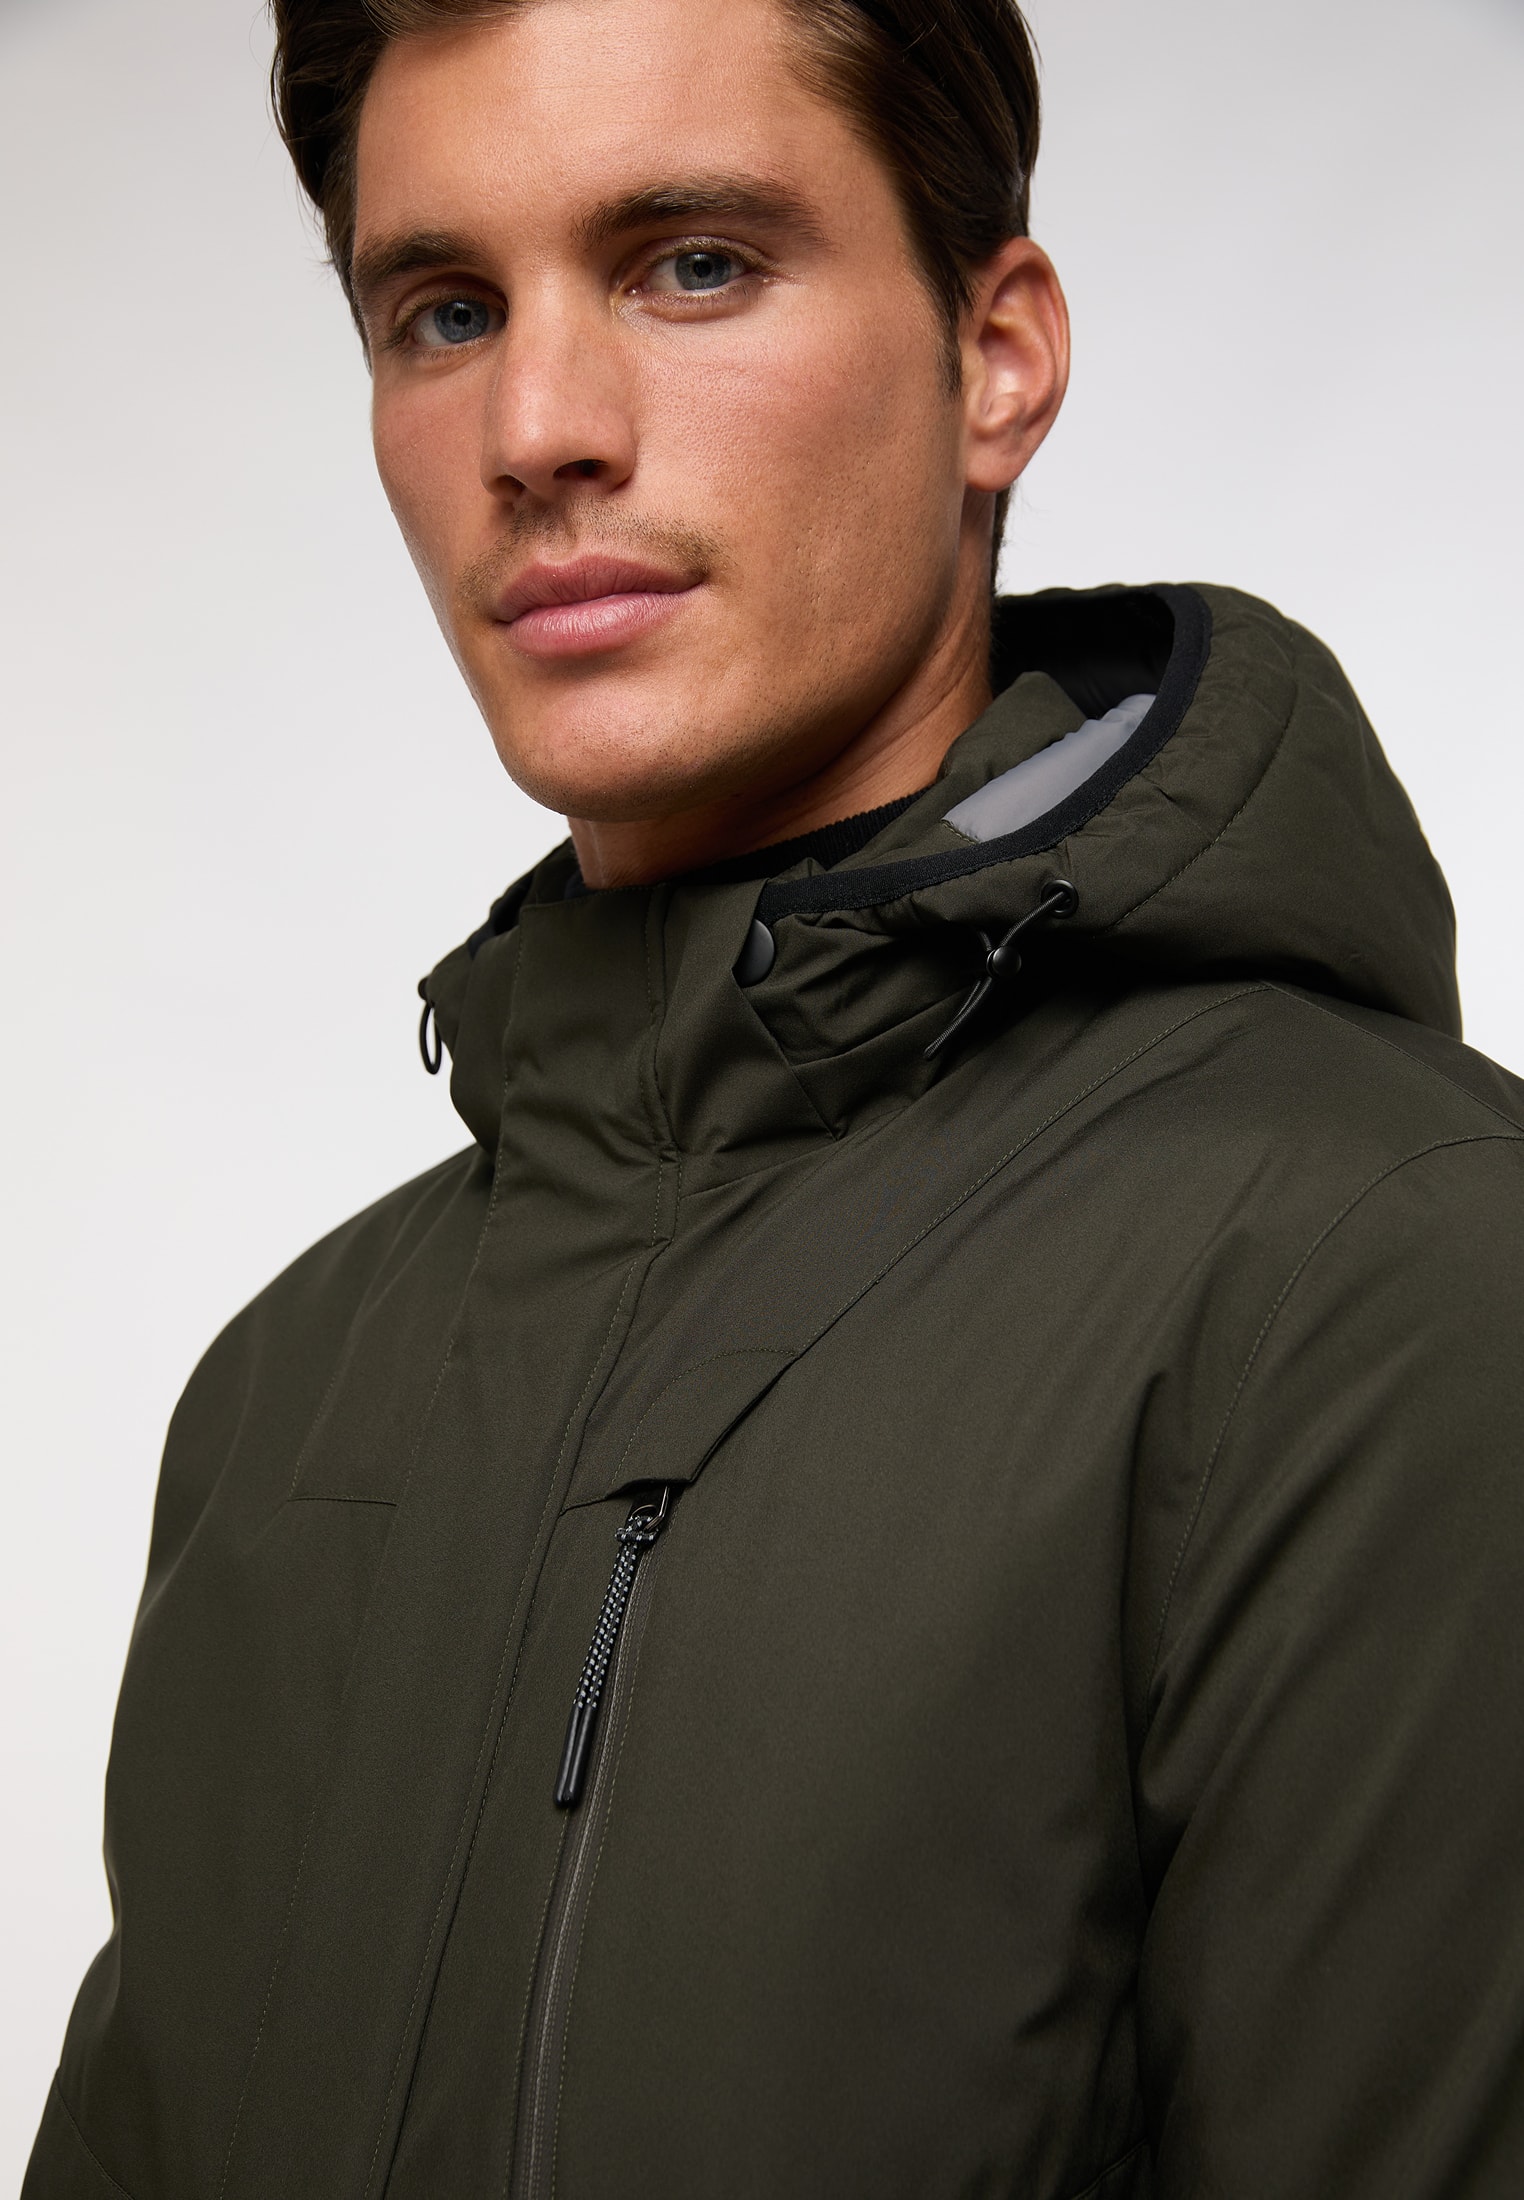 Parka jacket in olive plain